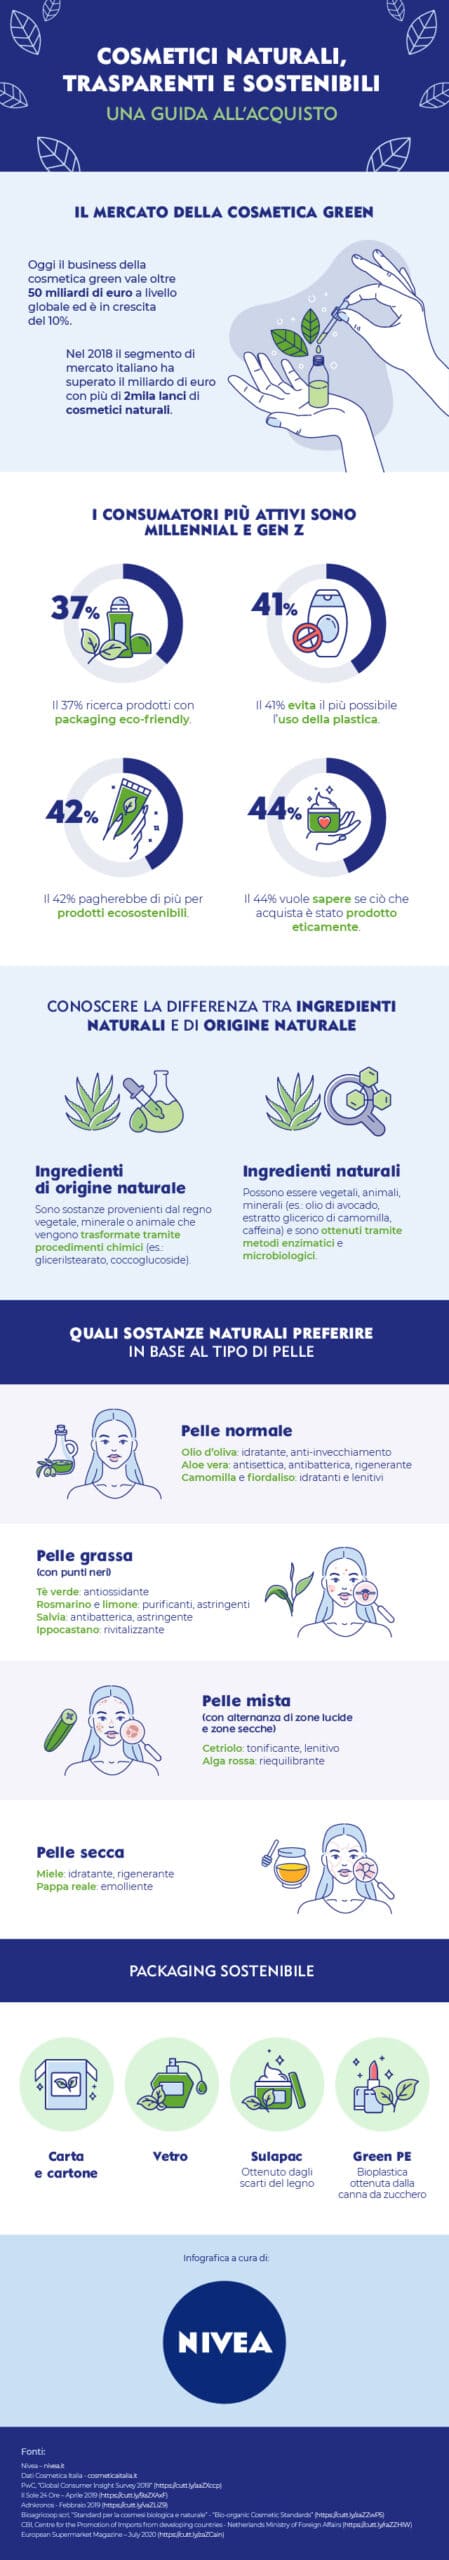 Nivea infografica Cosmetici naturali e sostenibili scaled